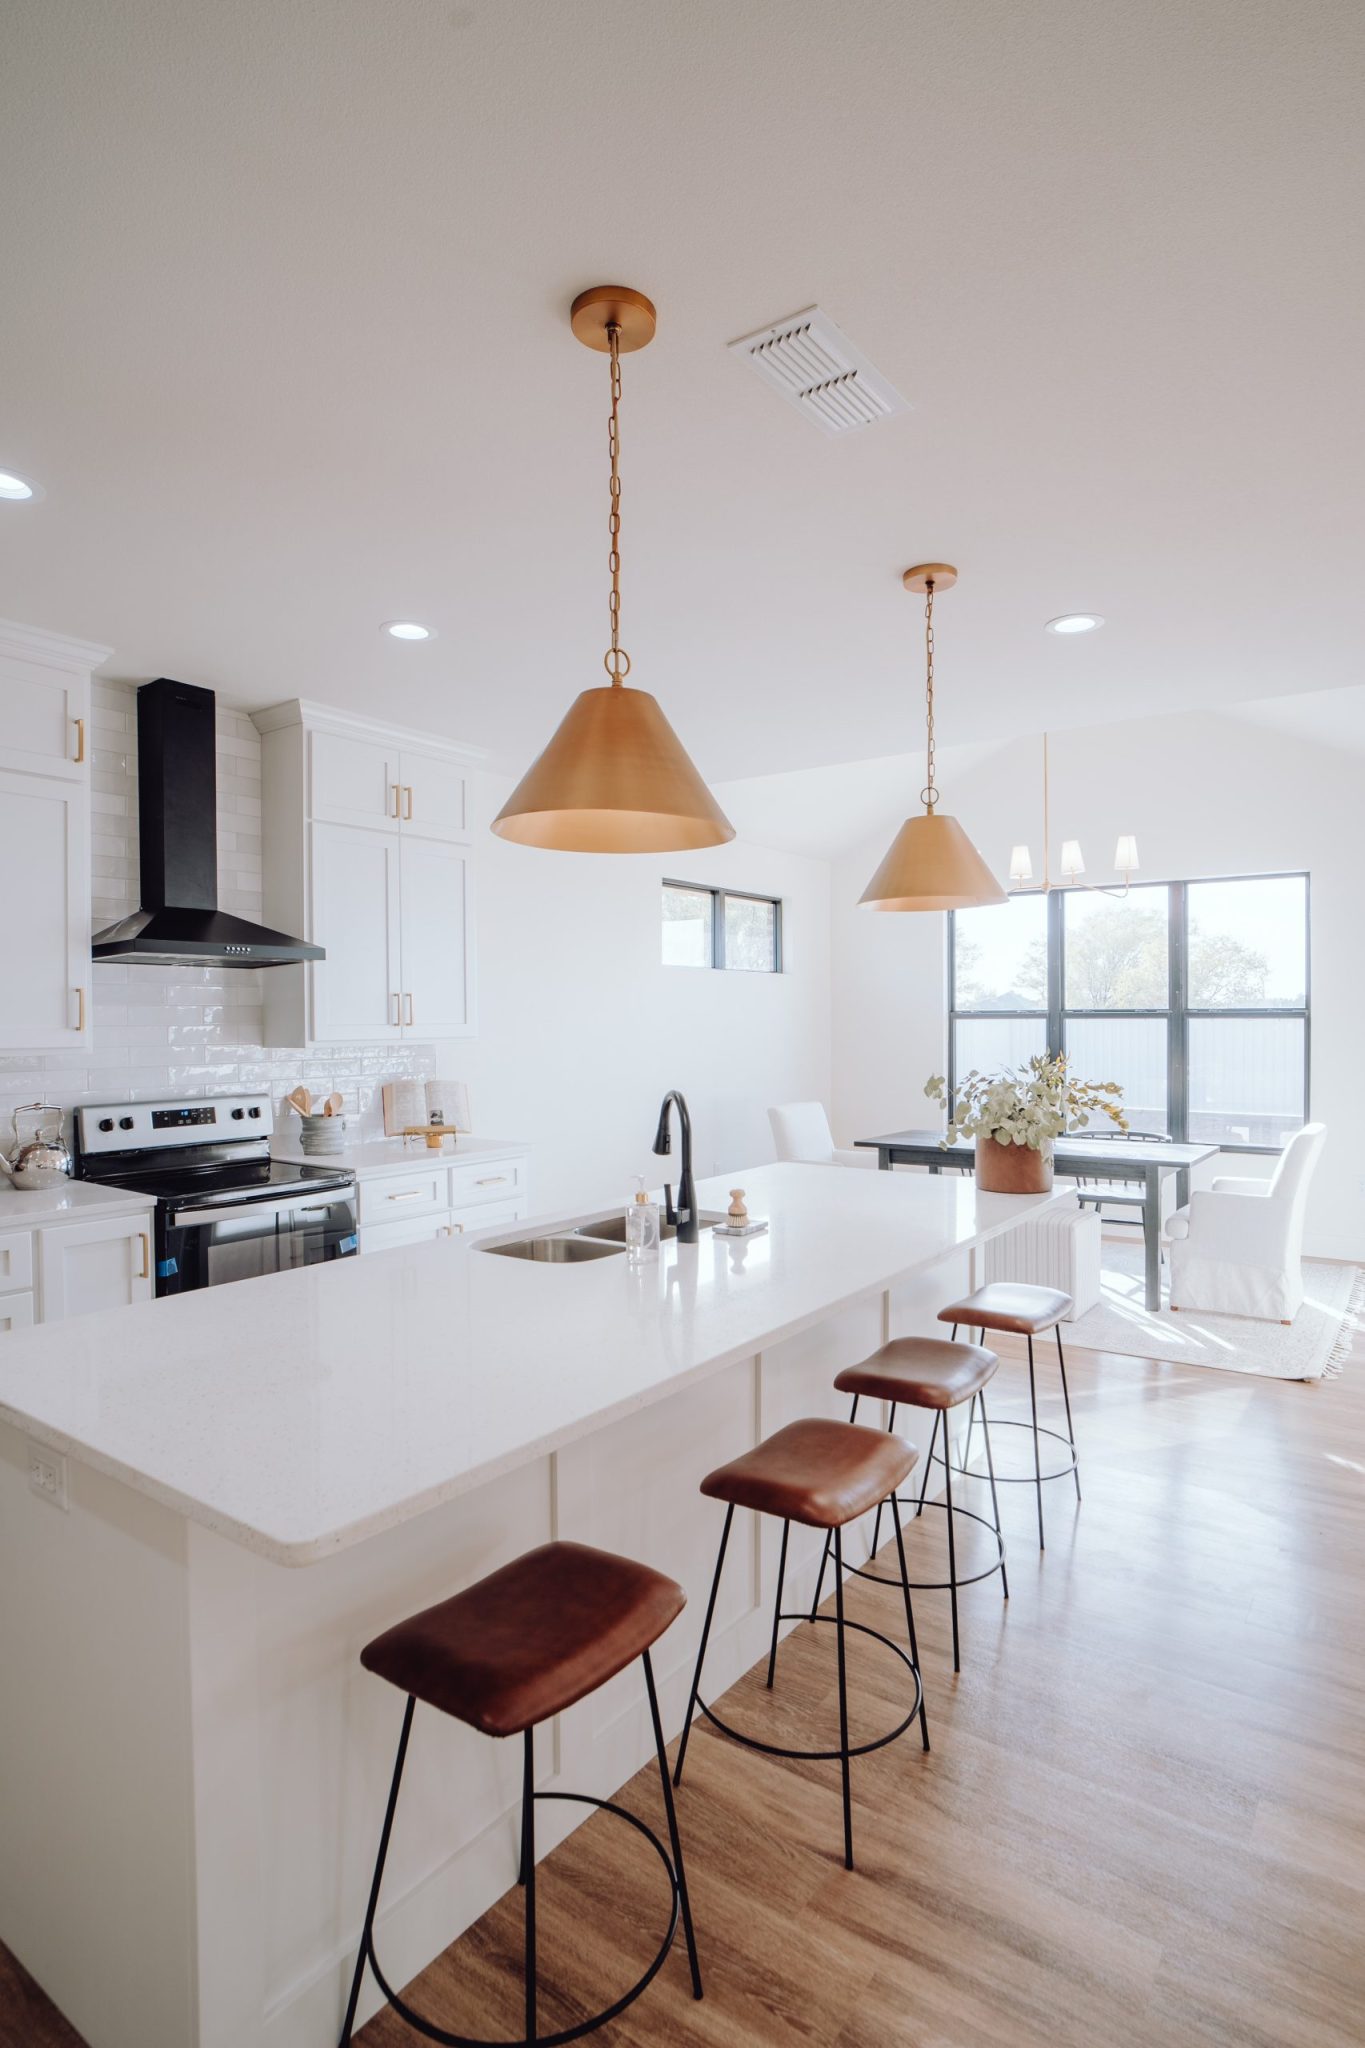 Cozinha clara com móveis planejados minimalista